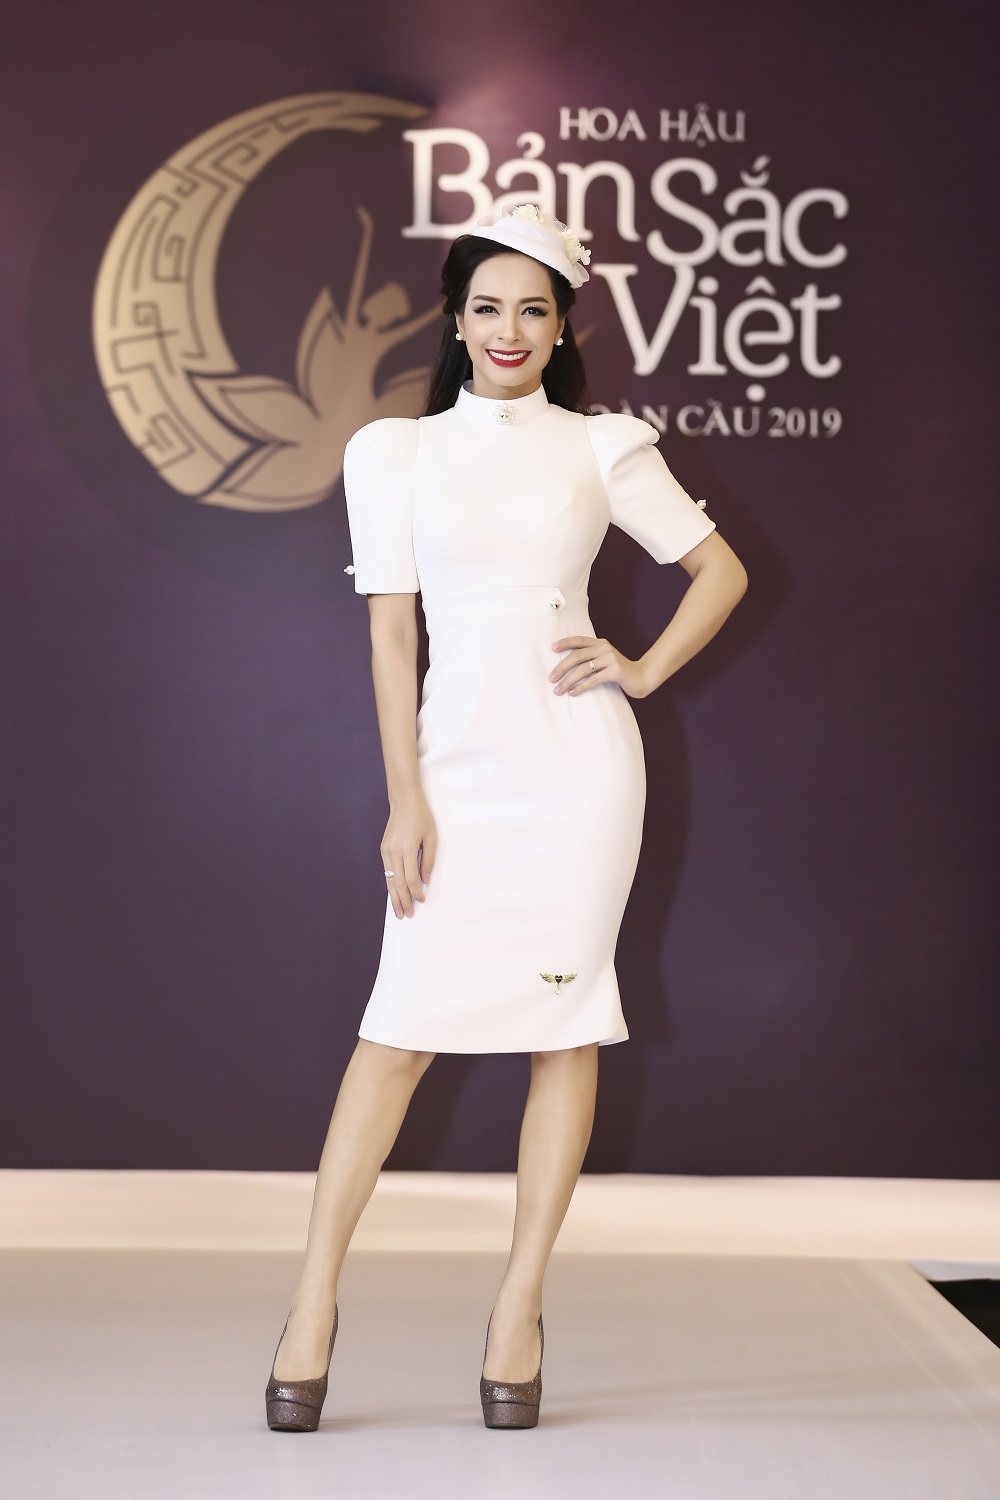 Sau 120 phút nghẹt thở của ĐT Việt Nam, bạn gái Trọng Đại rạng rỡ dự thi HH Bản sắc Việt toàn cầu - Tin sao Viet - Tin tuc sao Viet - Scandal sao Viet - Tin tuc cua Sao - Tin cua Sao